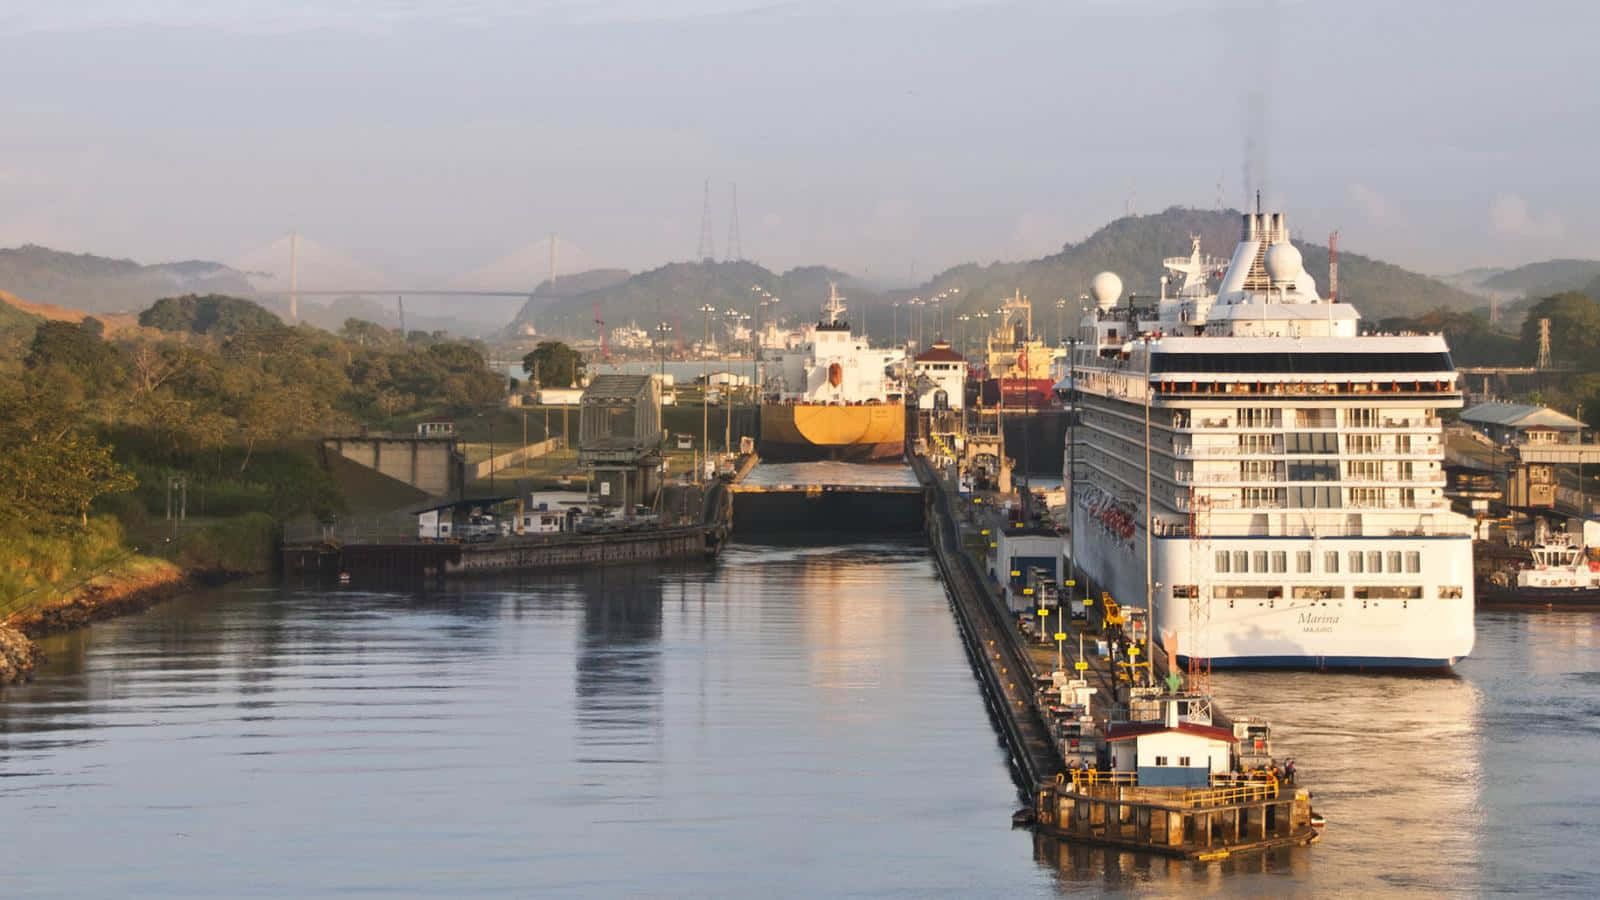 Panamakanalenmed Ett Vitt Kryssningsfartyg Wallpaper